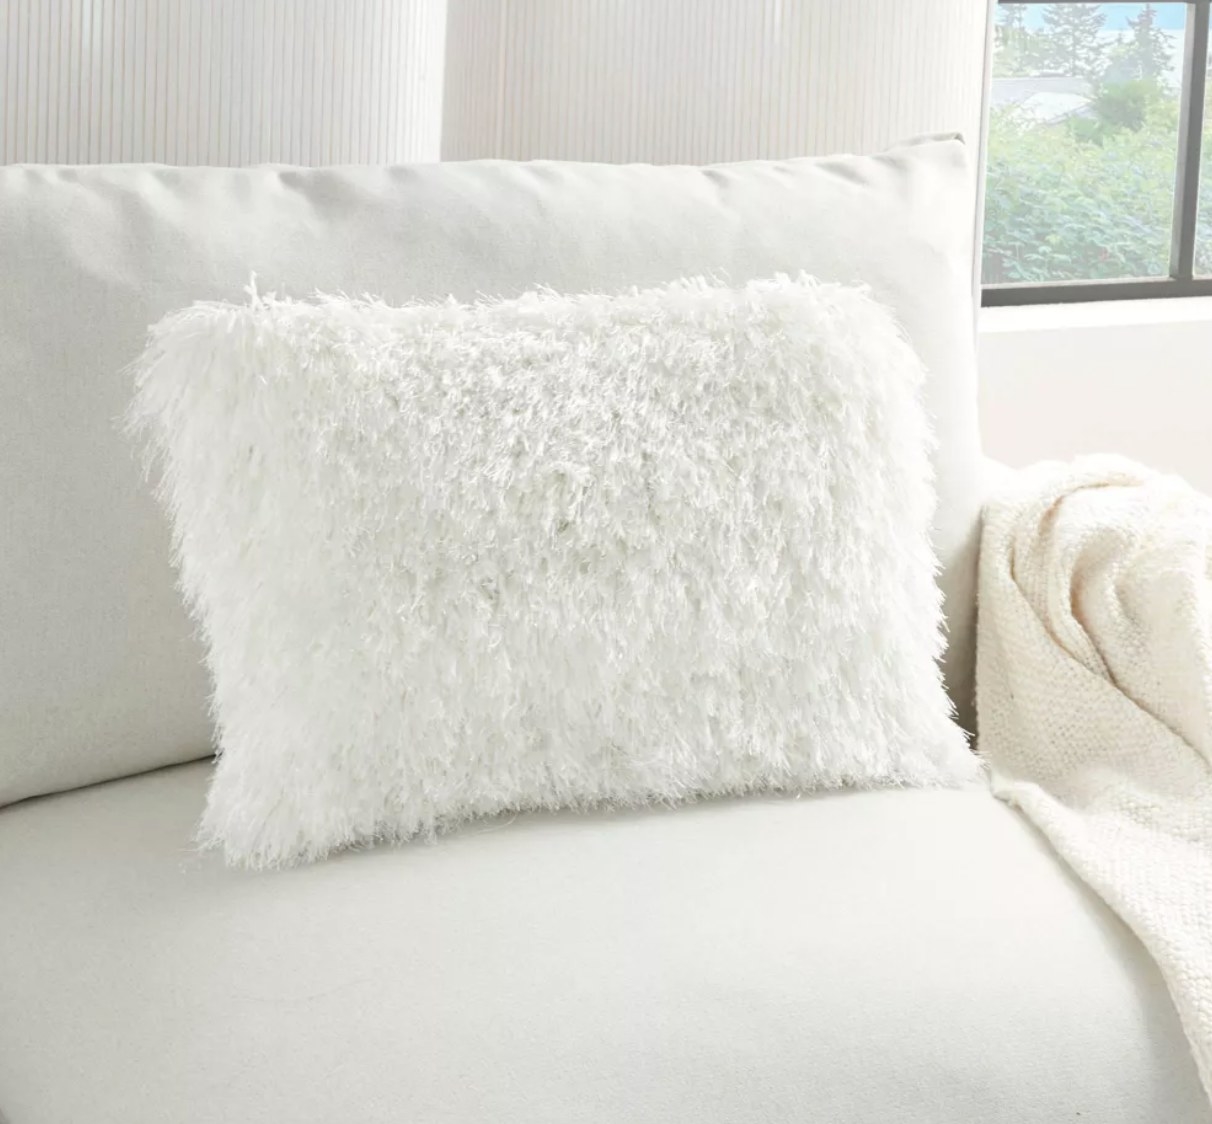 白色蓬松的枕头在沙发上